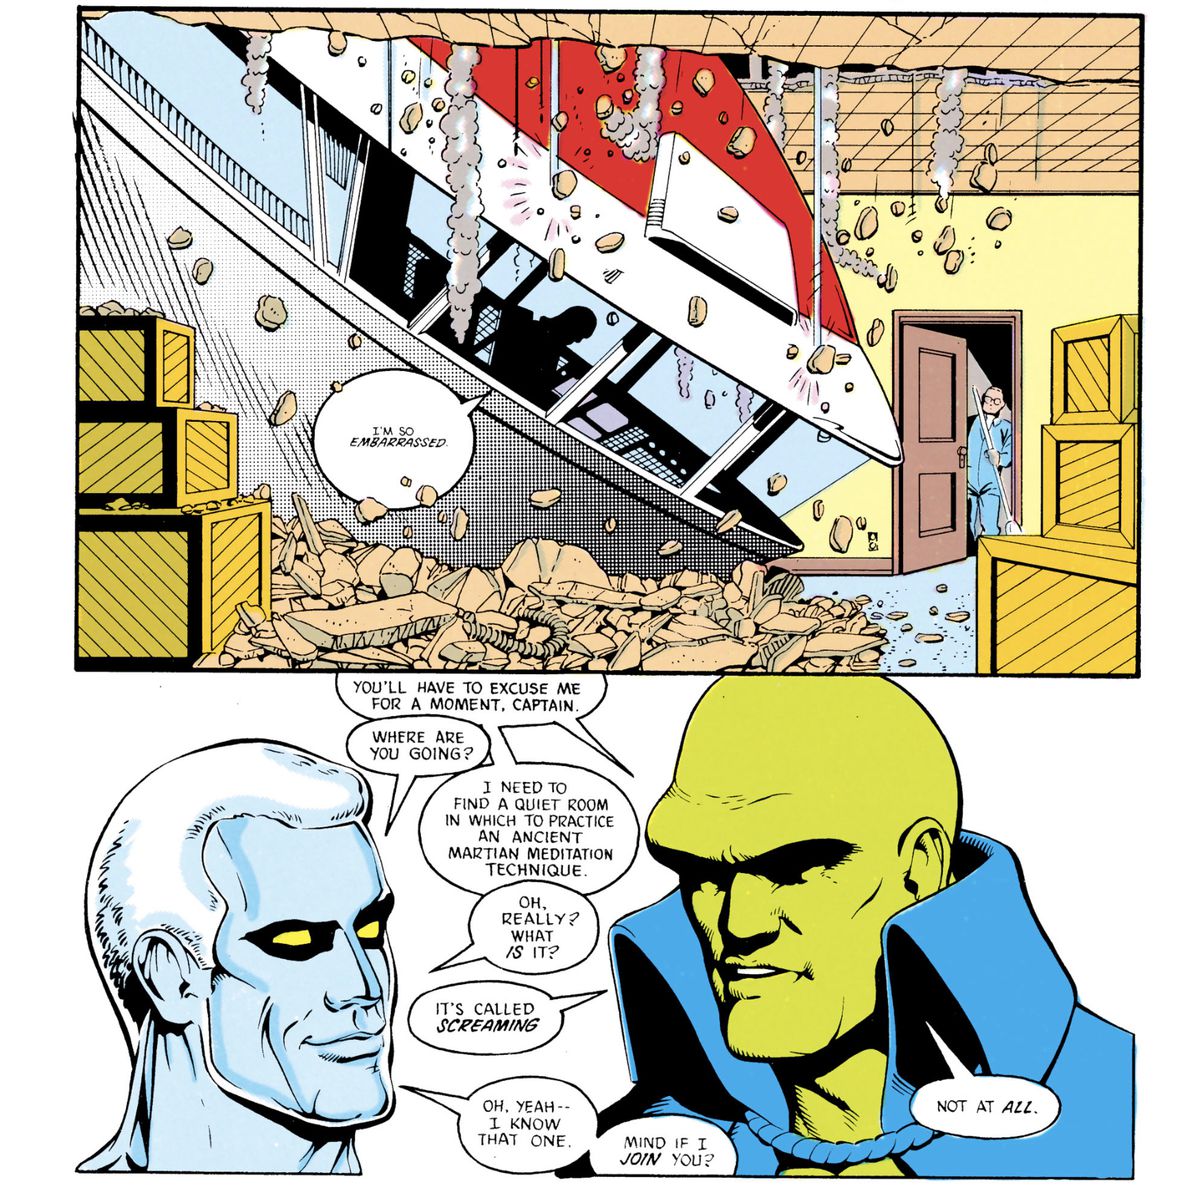 Un enorme velivolo sfonda il soffitto di un magazzino dell'edificio.  Nel pannello successivo, il Martian Manhunter invita Captain Atom a unirsi a lui in “un'antica tecnica di meditazione marziana [...] Si chiama urlare”. 